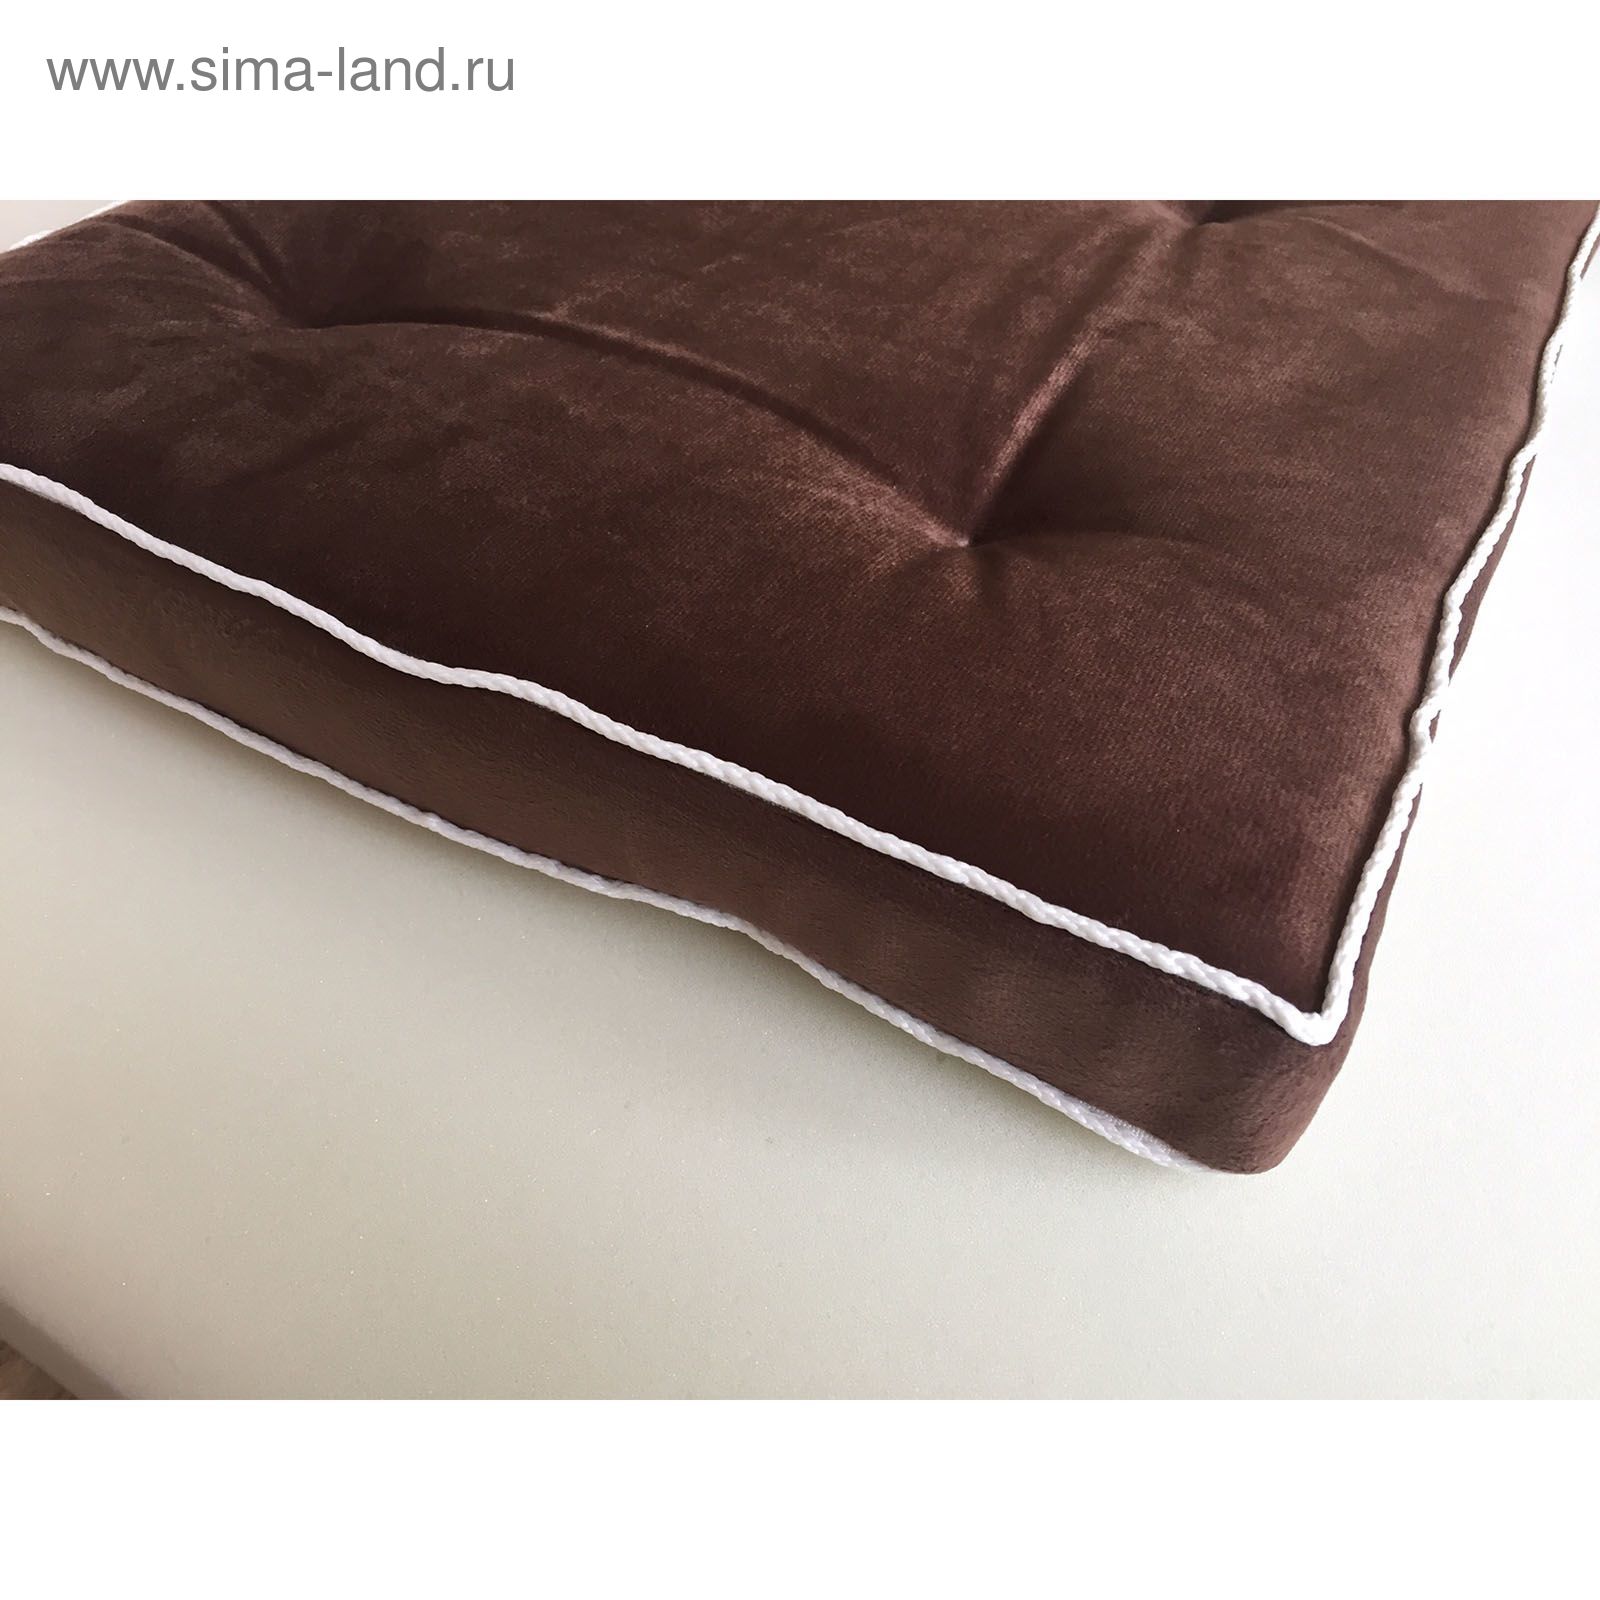 Велюровая коричневая подушка